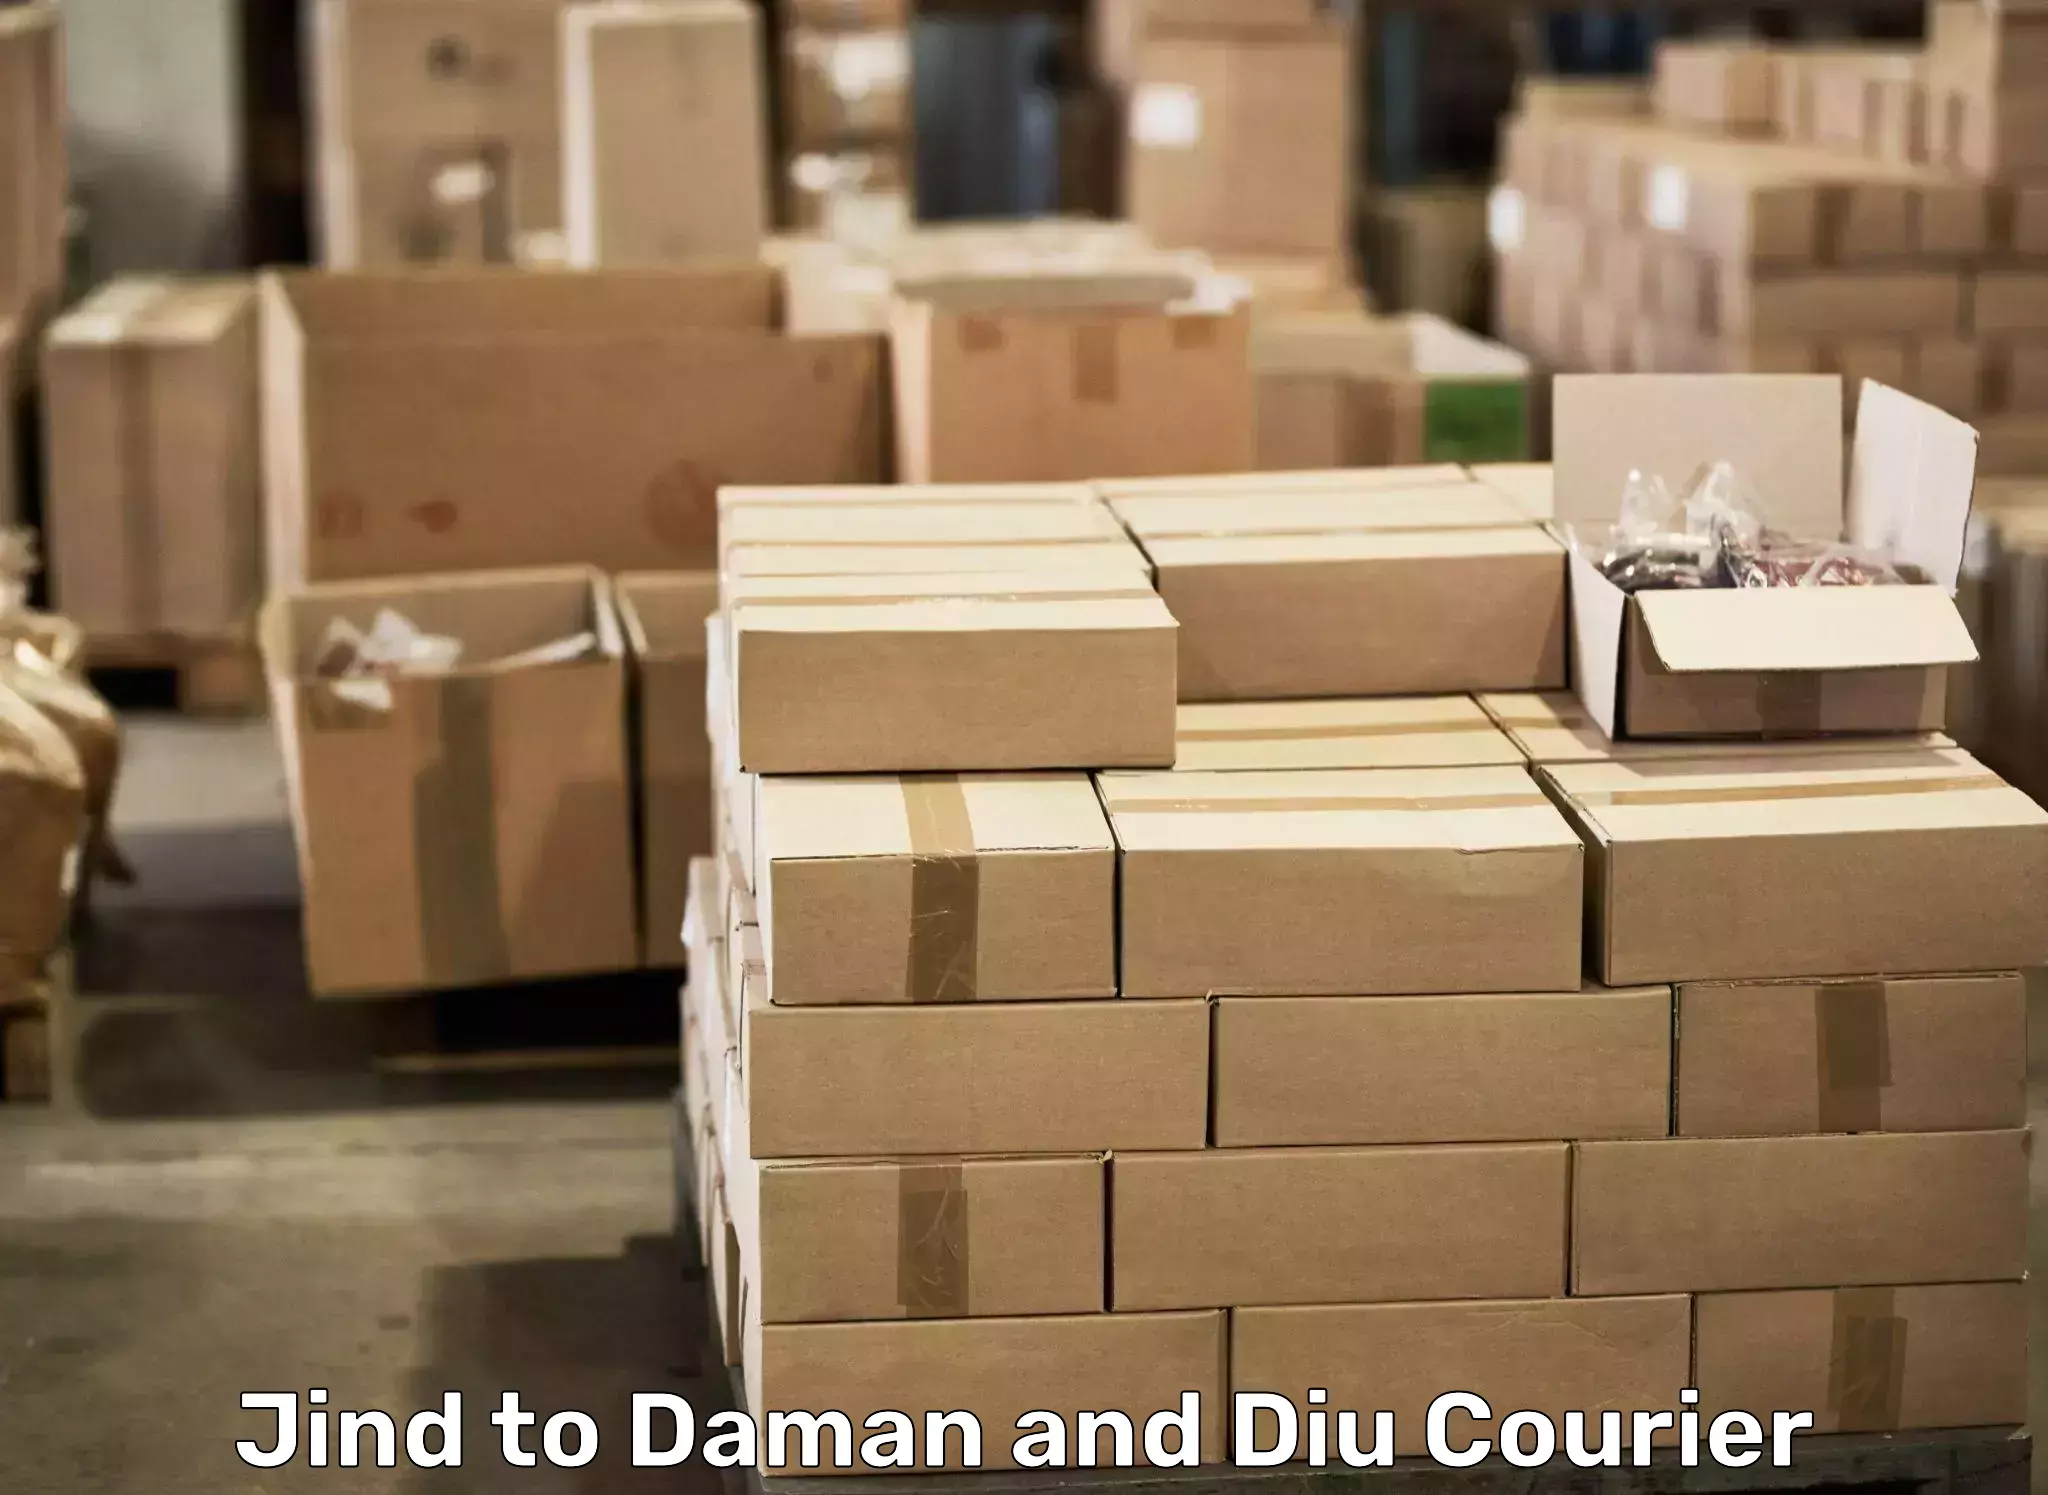 Seamless moving process Jind to Daman and Diu